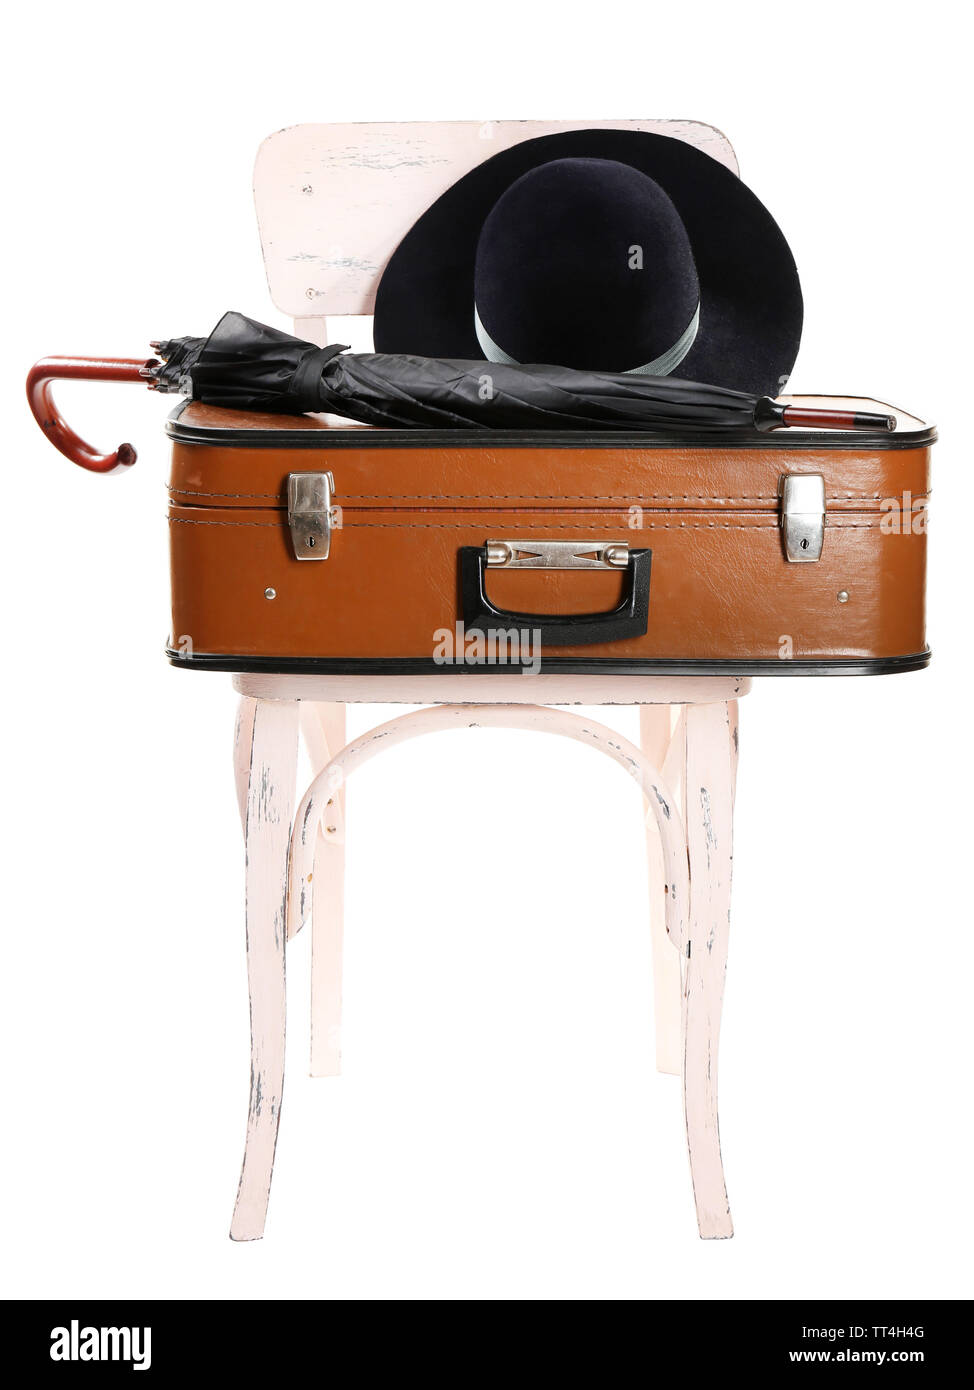 Vintage ancienne valise de voyage et chaise en bois avec chapeau féminin, isolated on white Banque D'Images